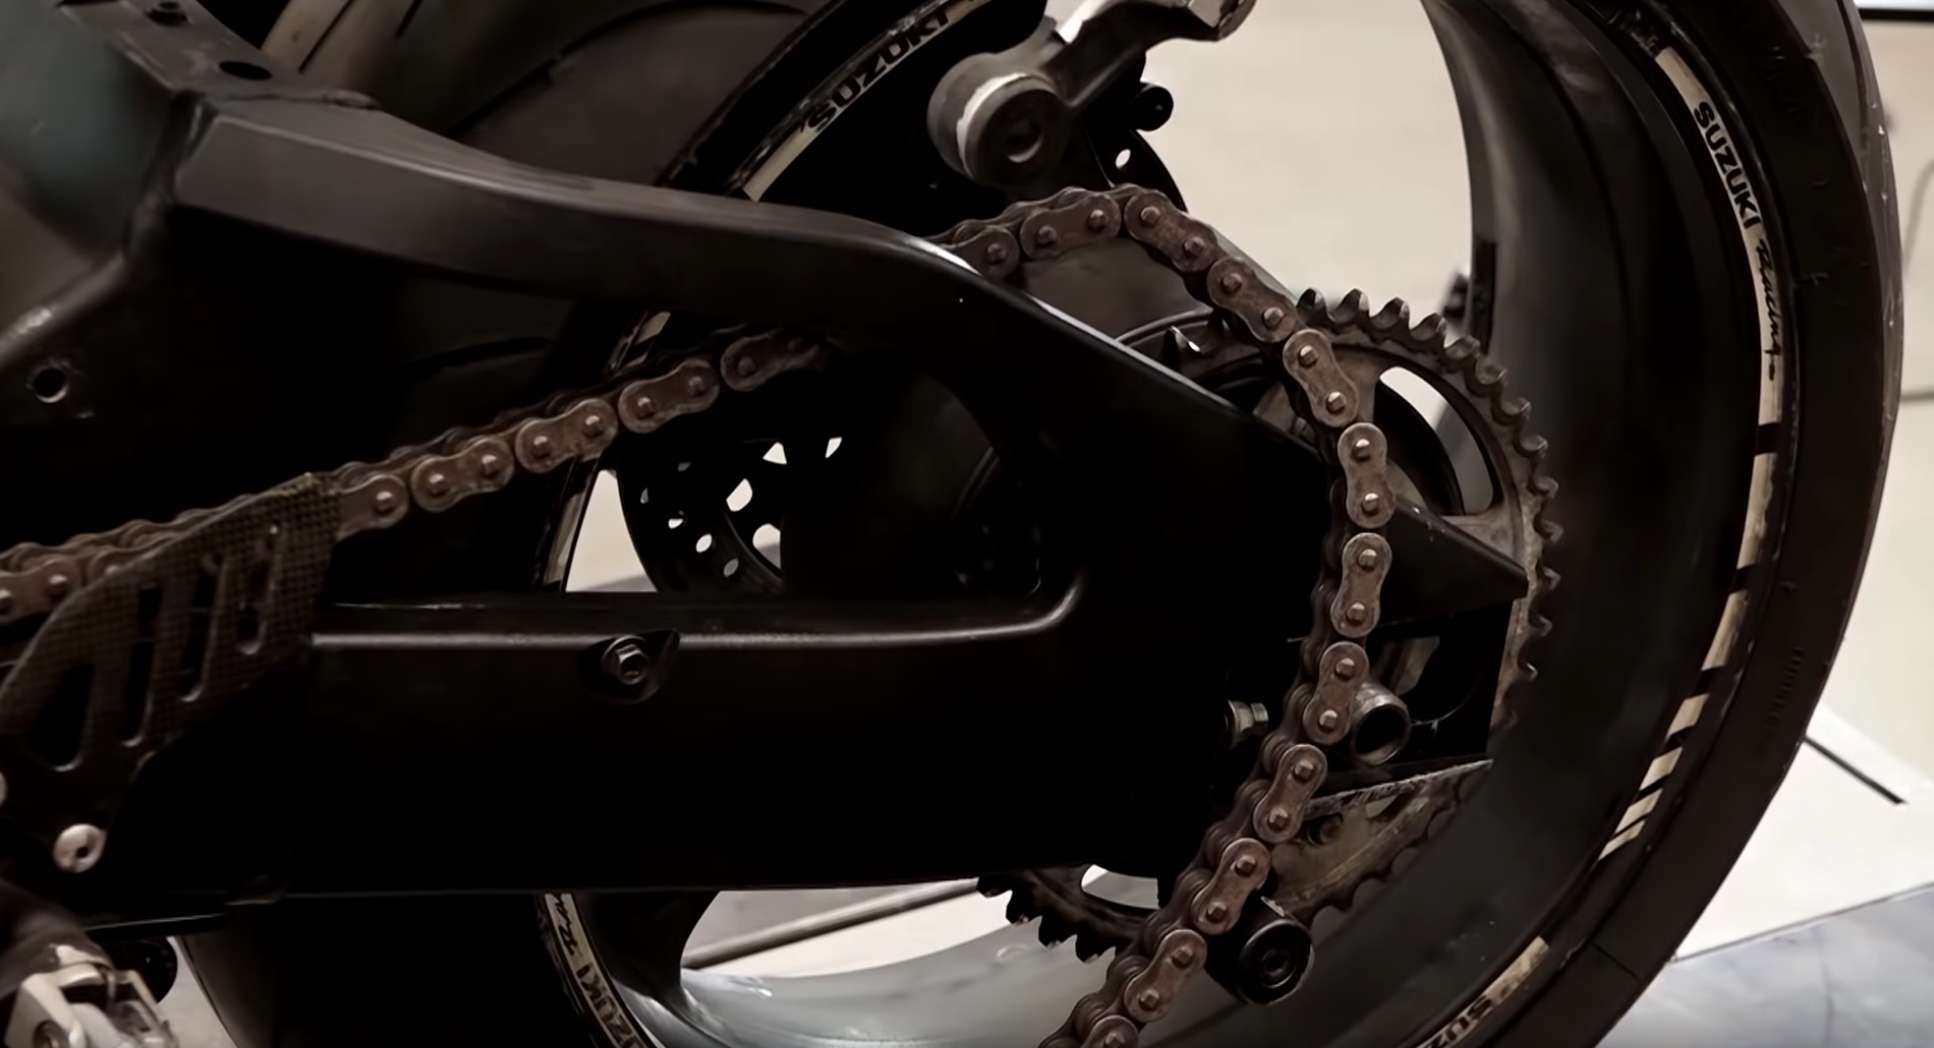 Suzuki motorcycle rear wheel bearing removal